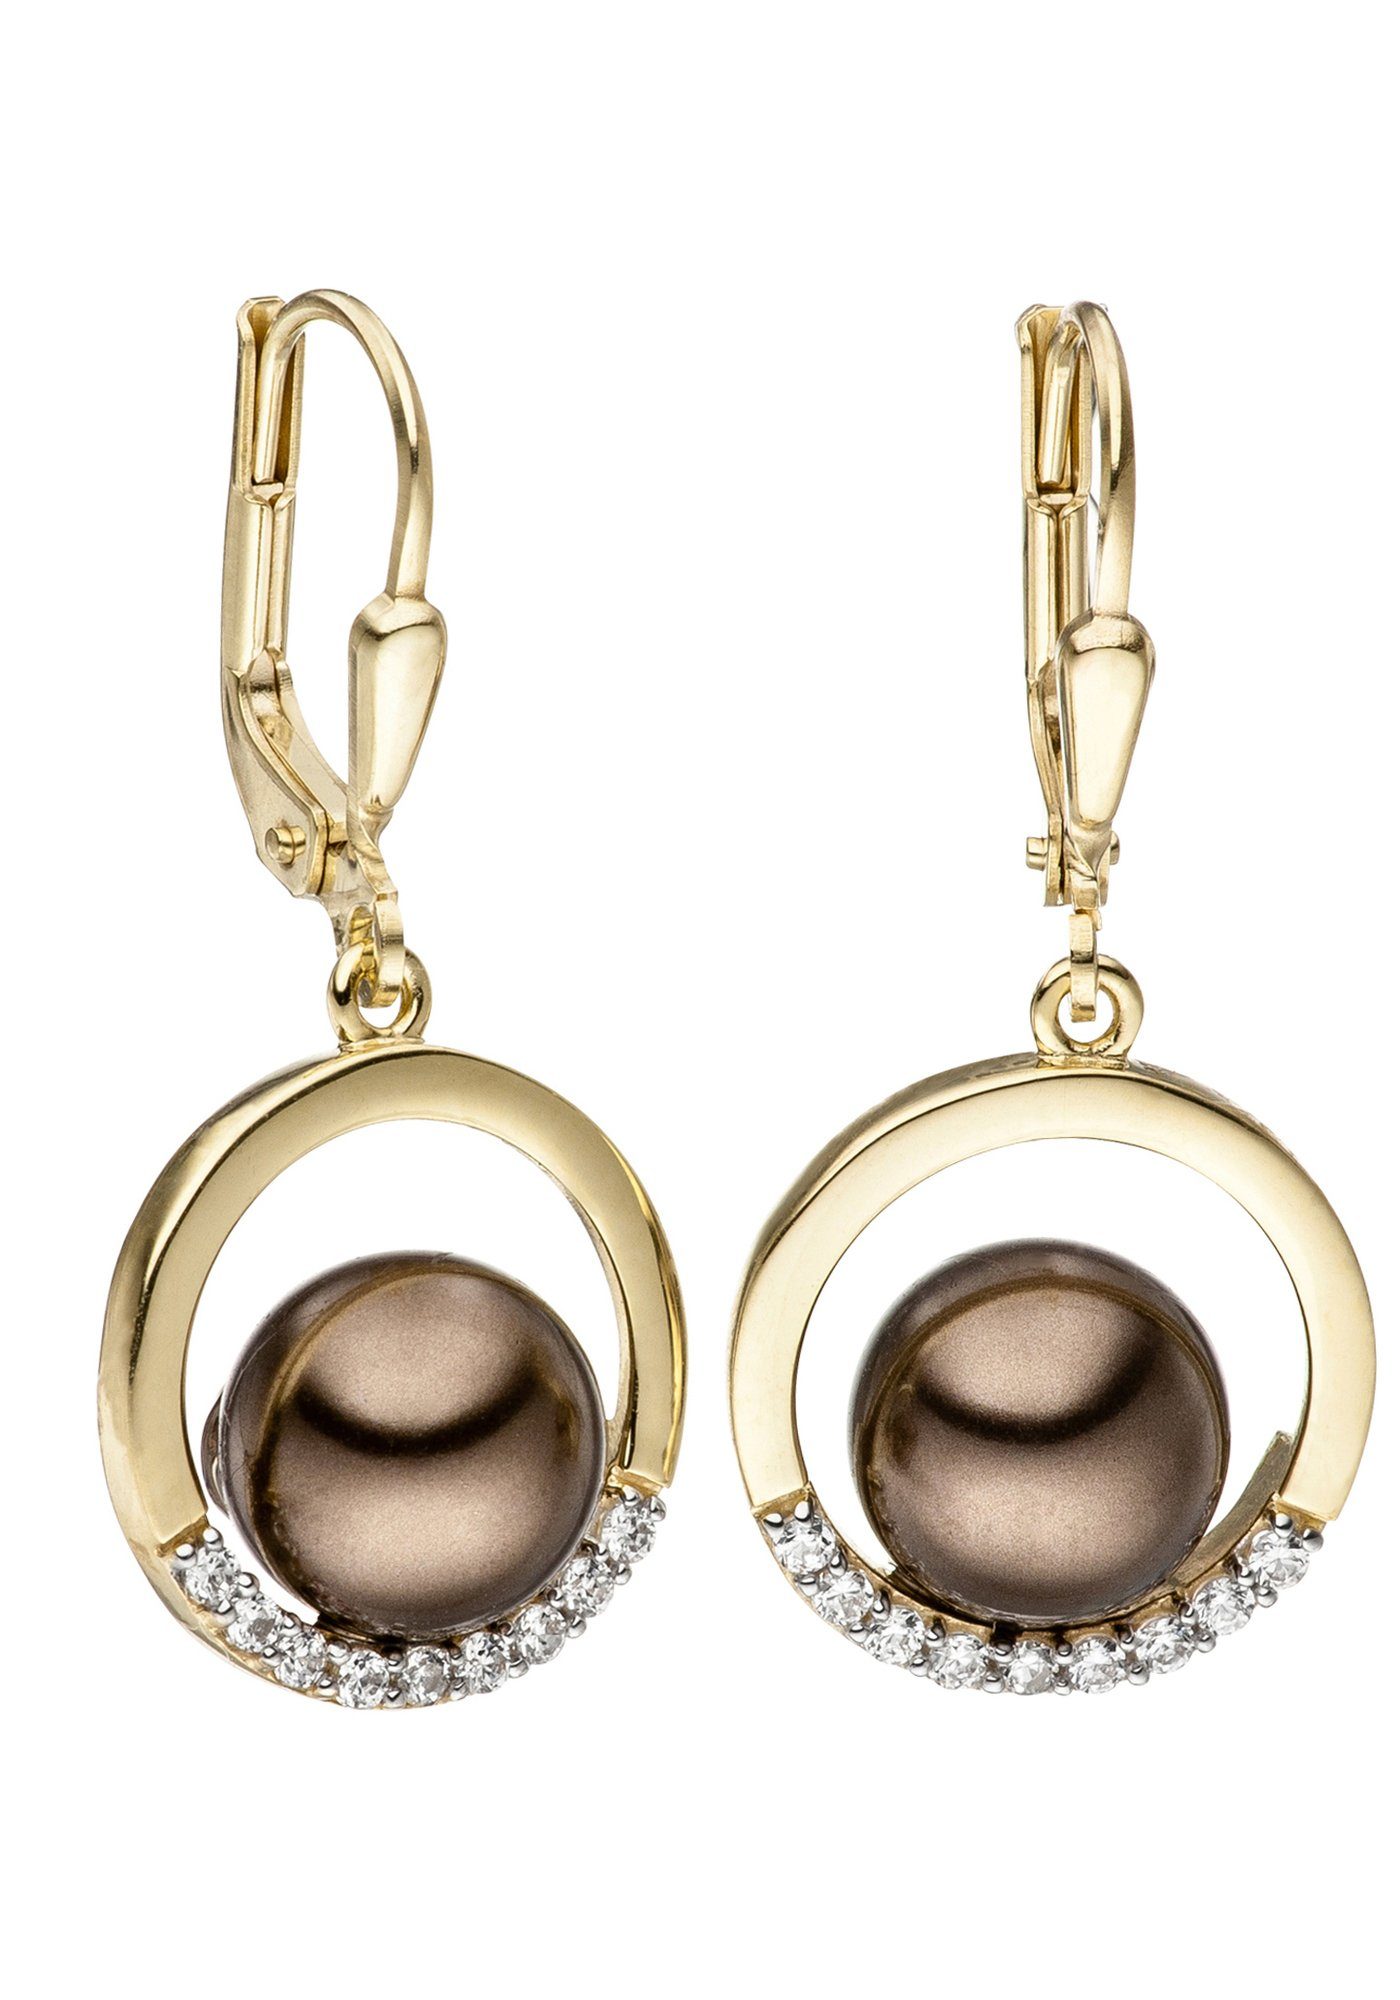 Damen Schmuck JOBO Perlenohrringe Ohrringe in Bicolor-Optik, 333 Gold synthetischen Perlen und Zirkonia